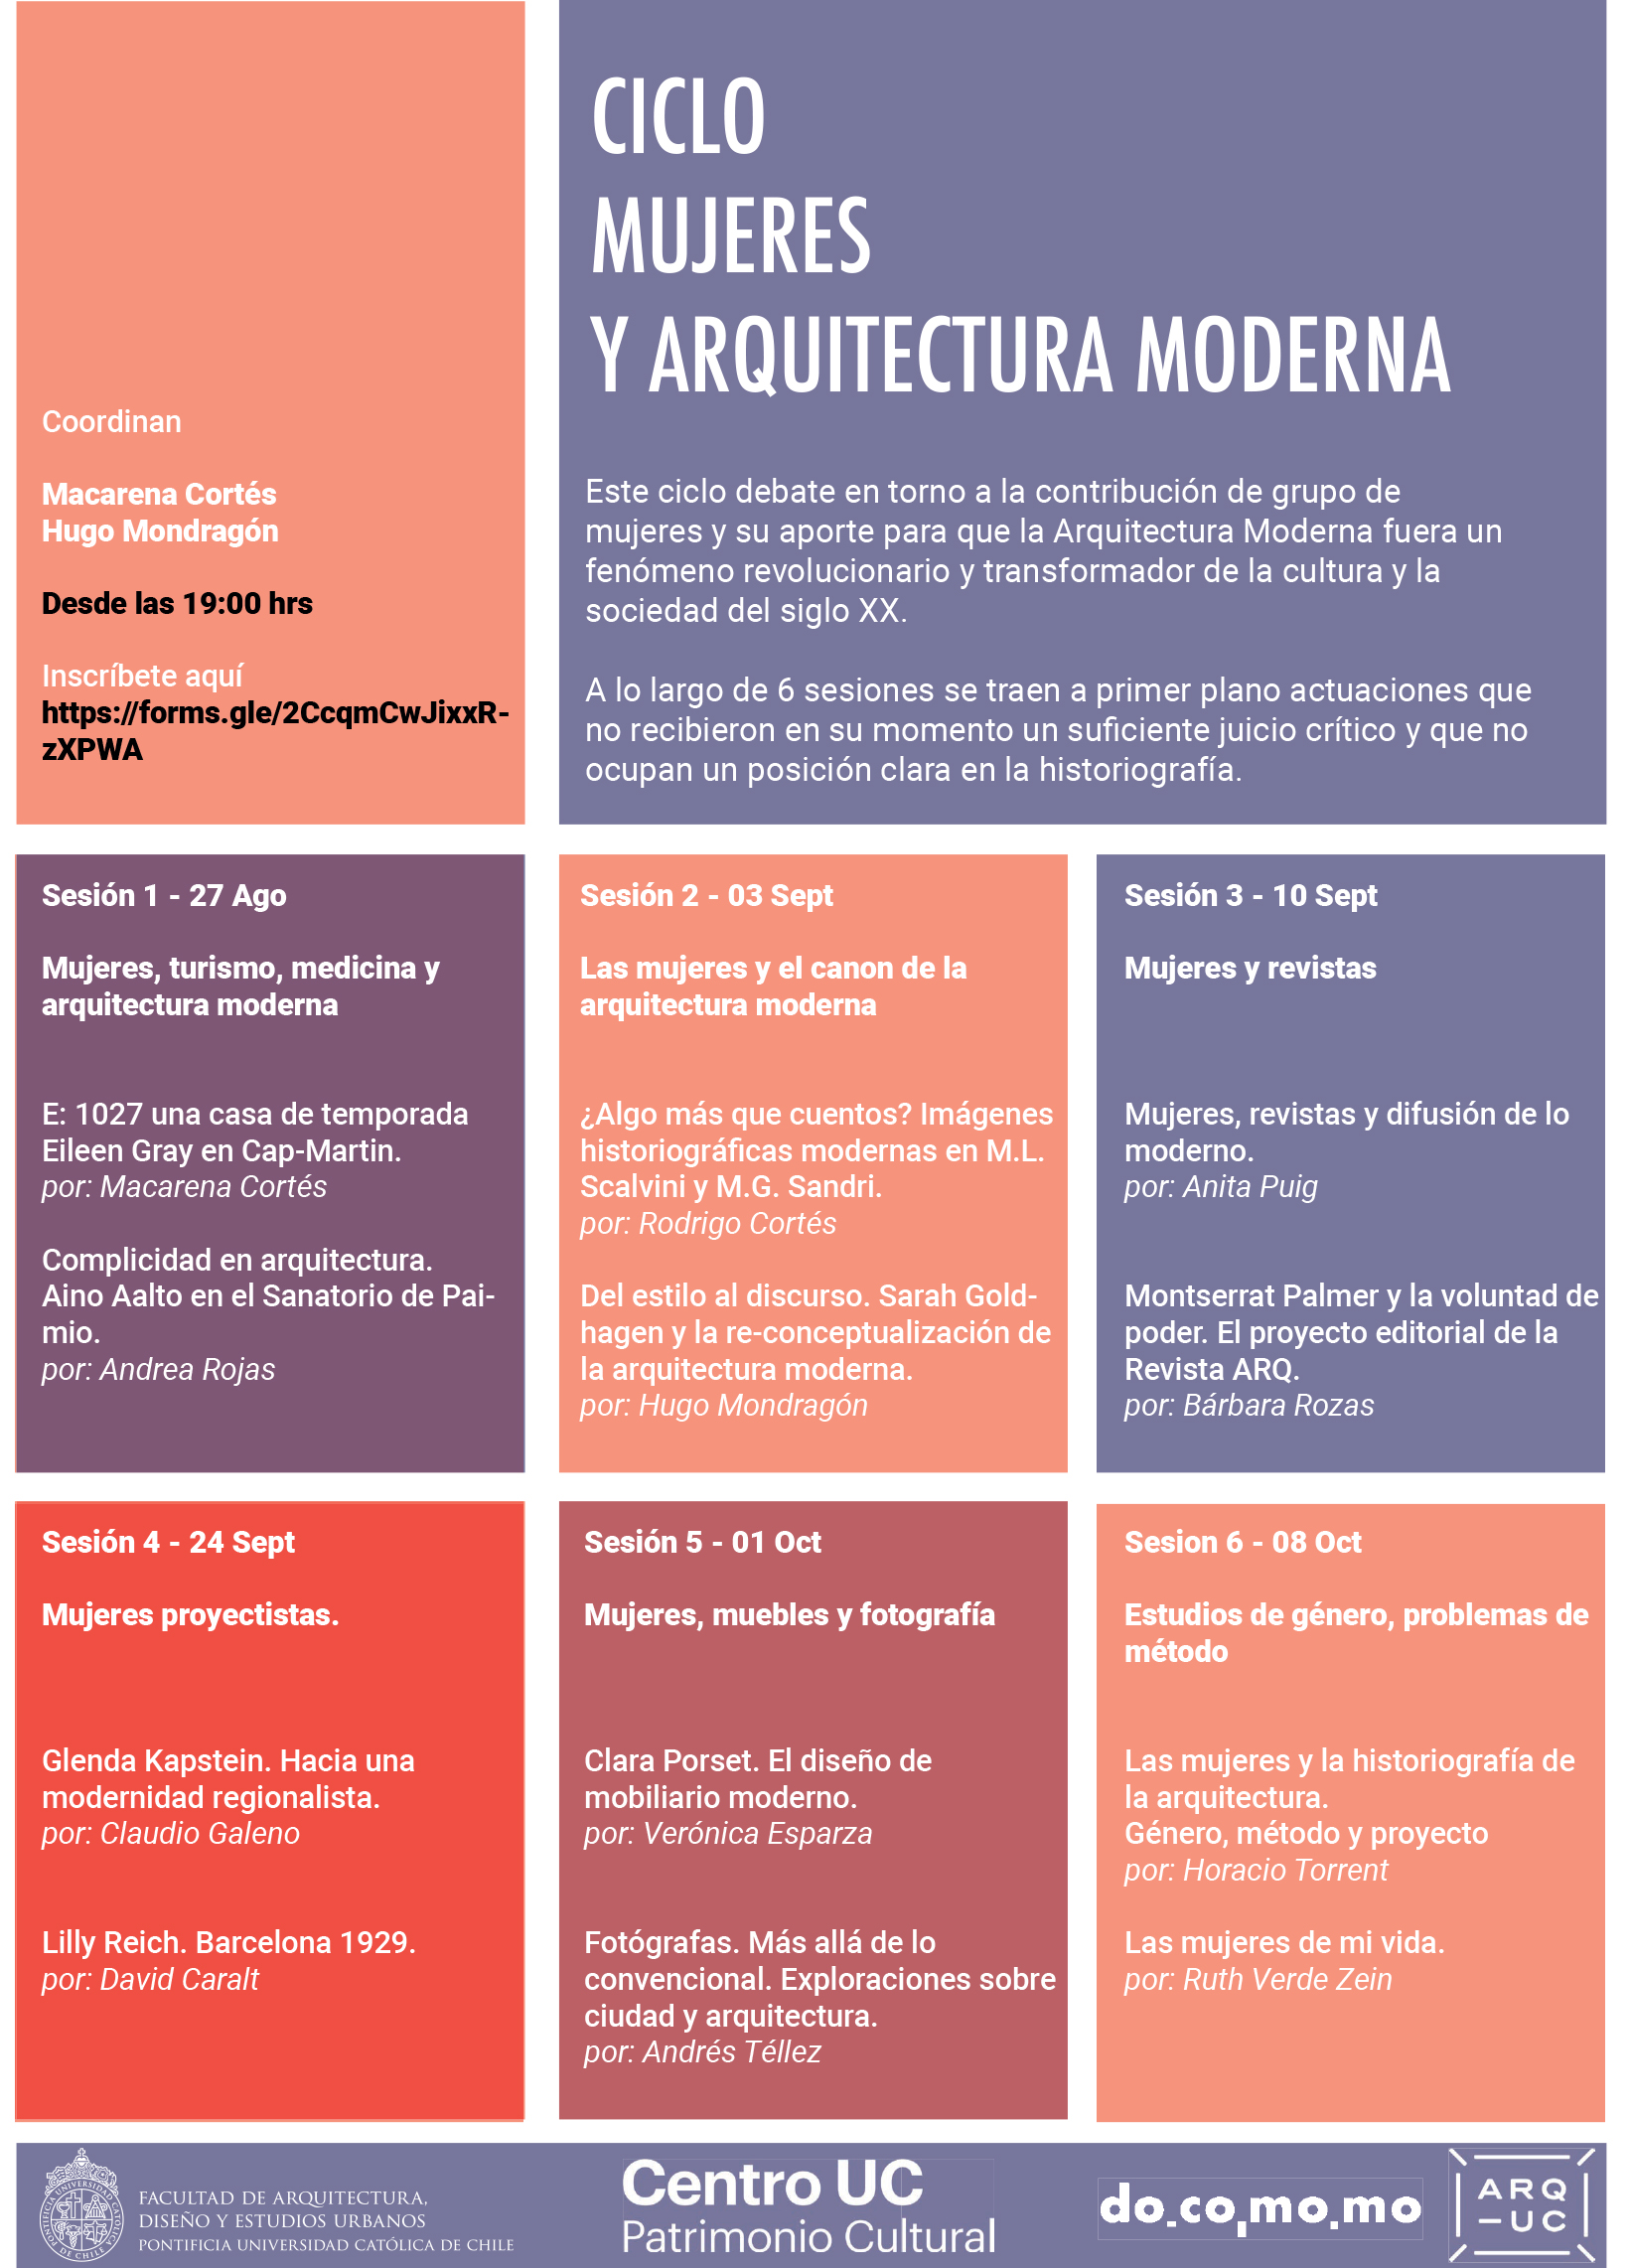 Afiche_ciclo_mujeres_y_la_arquitectura_moderna.jpg